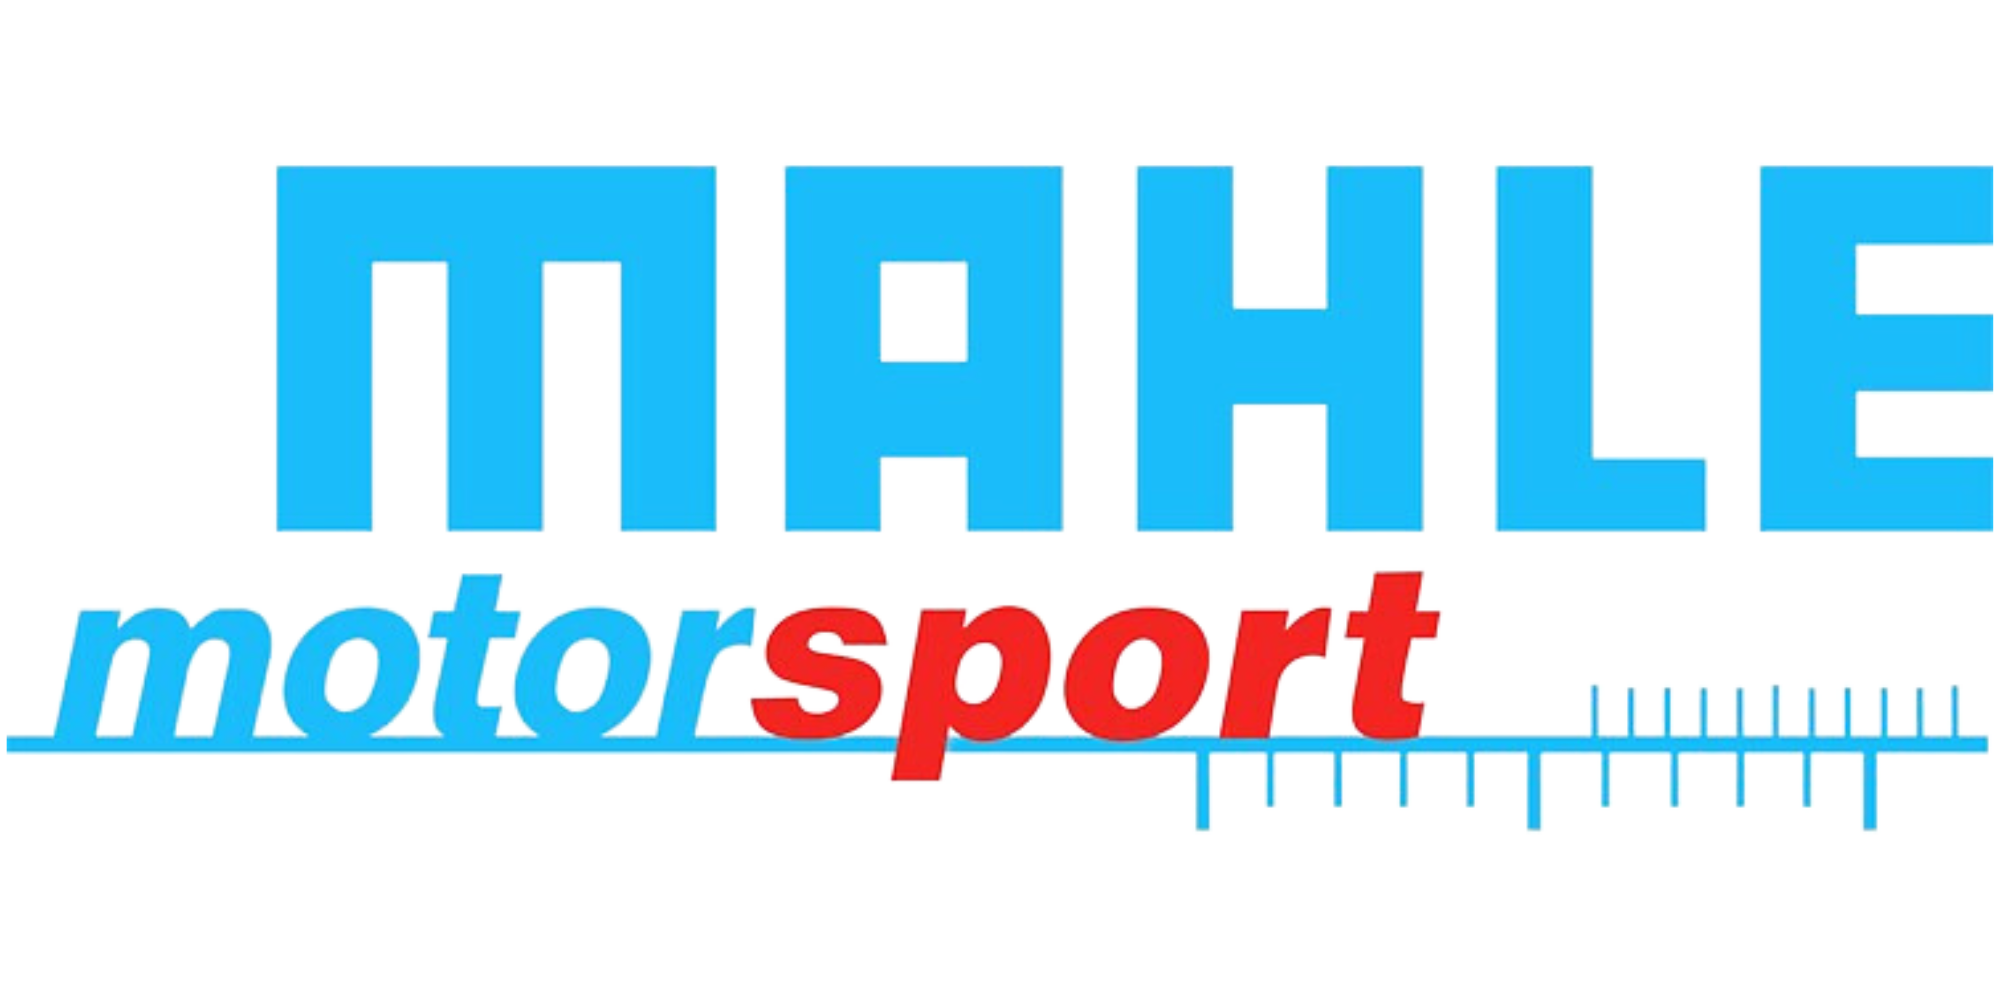 Mahle Motorsport Logo